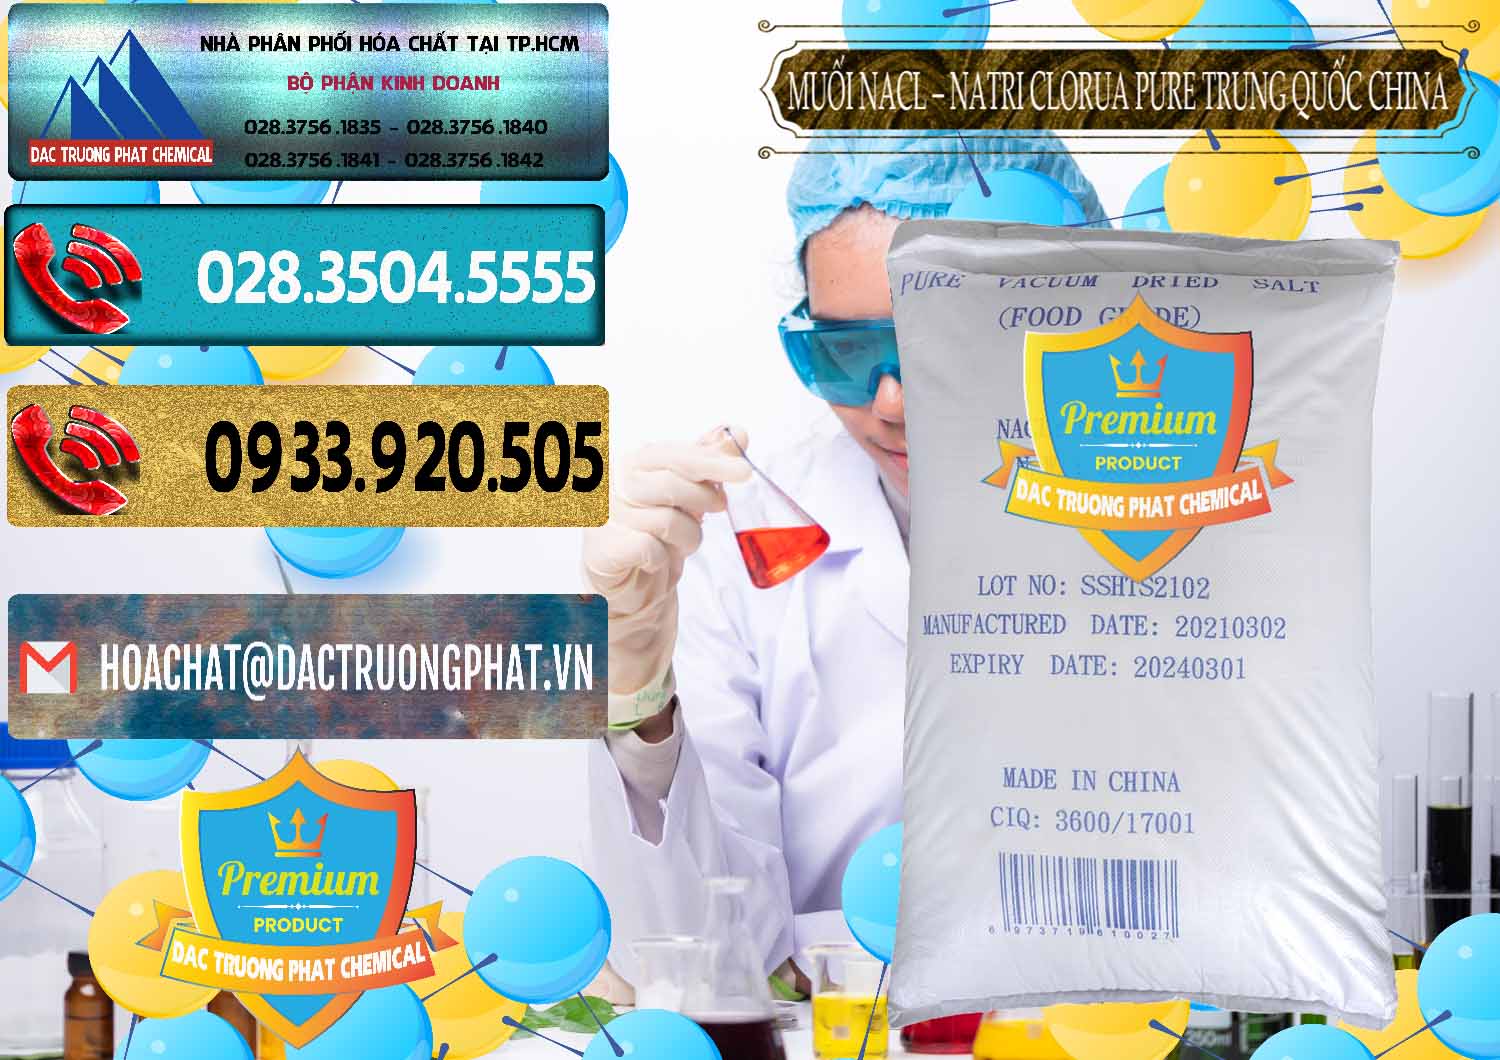 Công ty cung ứng & bán Muối NaCL – Sodium Chloride Pure Trung Quốc China - 0230 - Công ty phân phối - bán hóa chất tại TP.HCM - hoachatdetnhuom.com